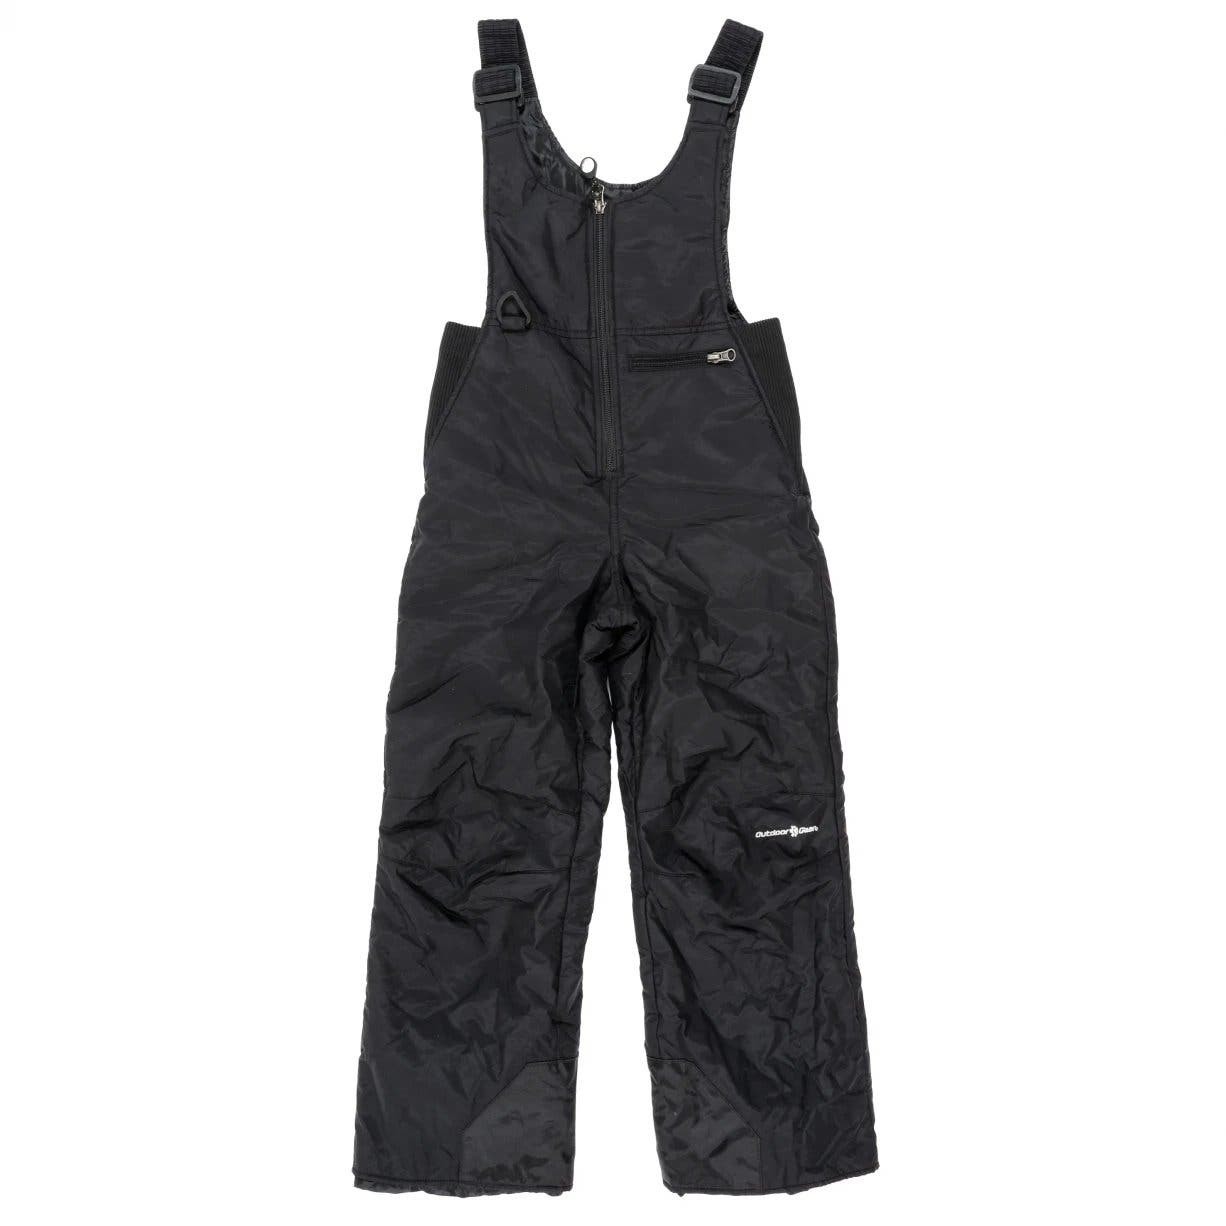 Primary image for Outdoor Gear Kids Peak Snow Bibs Ski Pants Black Large